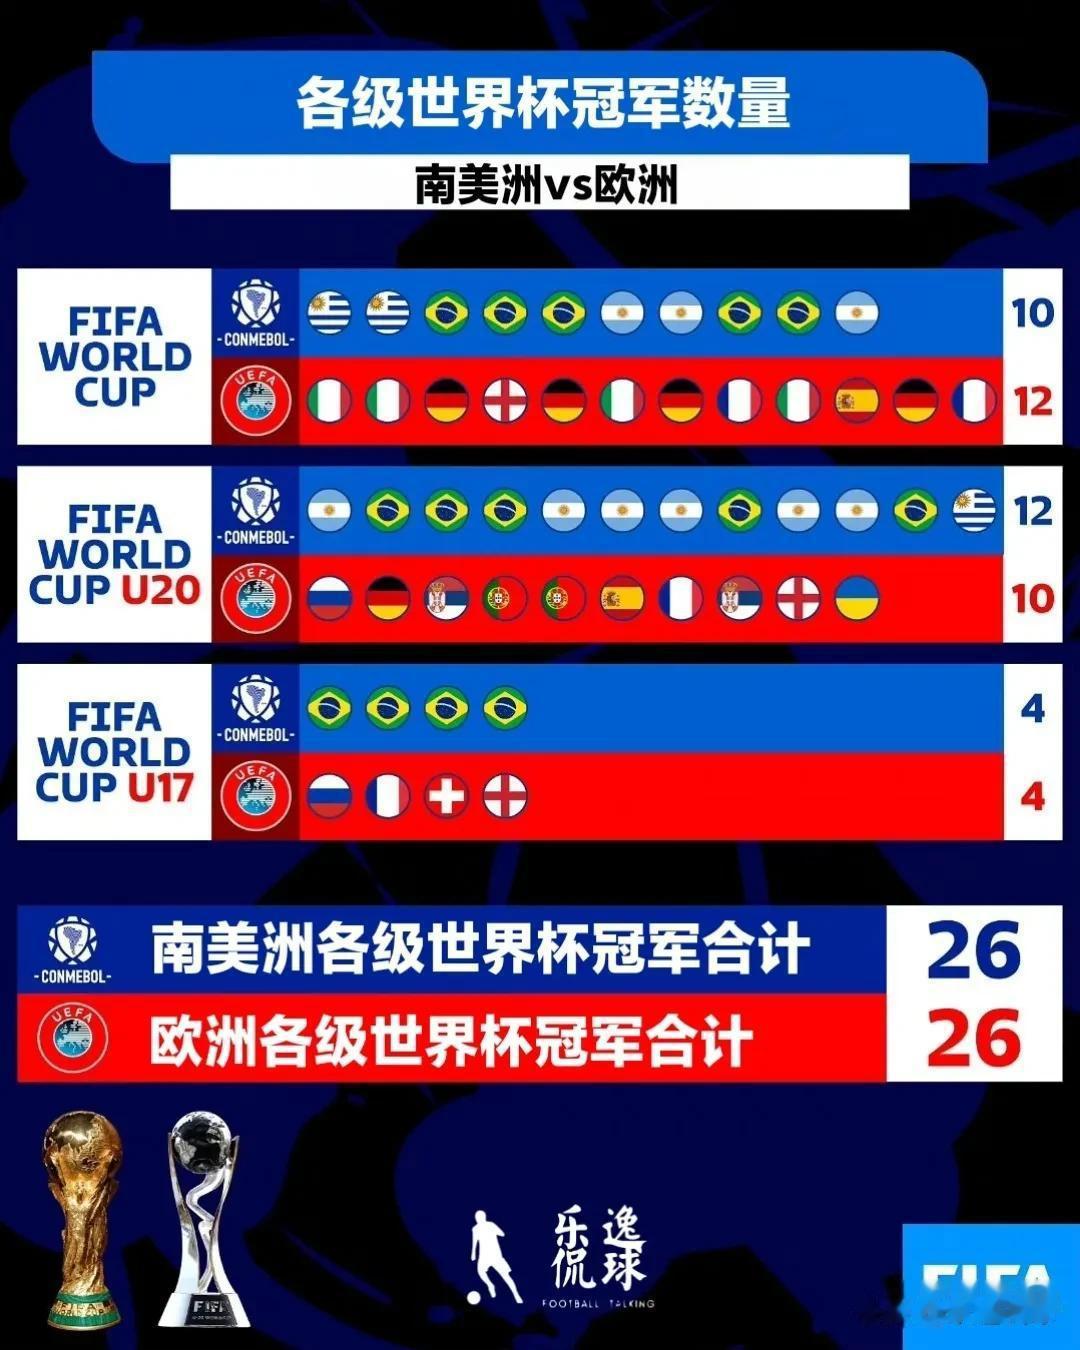 乌拉圭赢得U20世界杯冠军奖杯之后，南美洲和欧洲的各级世界杯冠军奖杯数量持平。
(1)